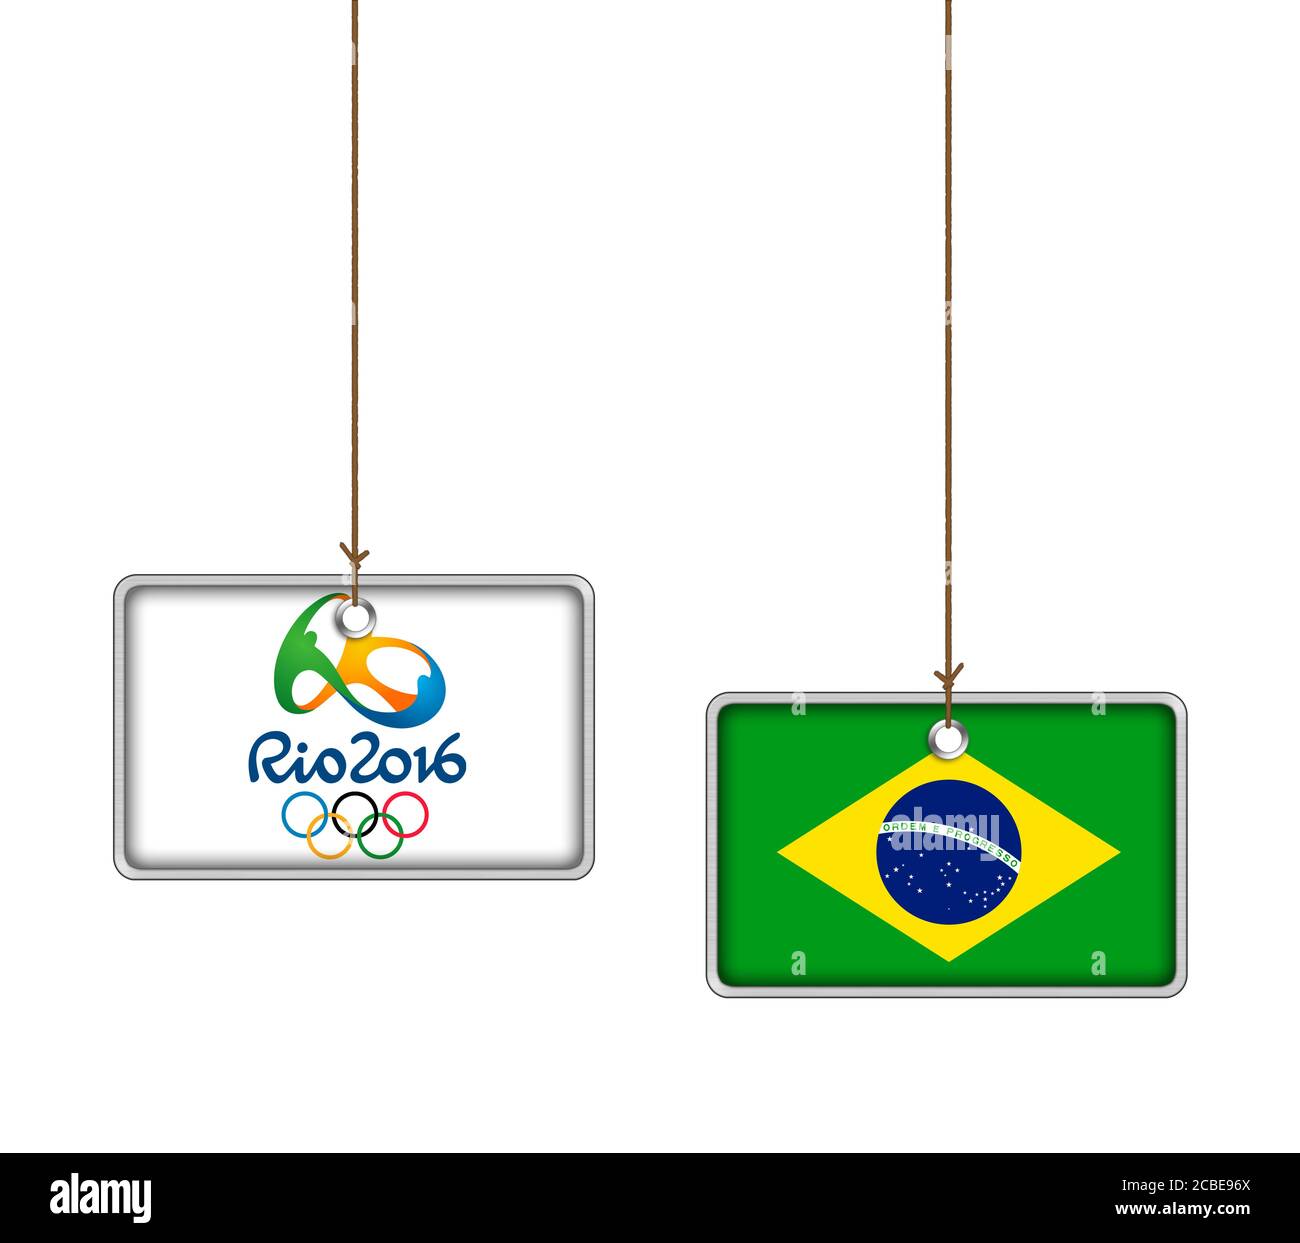 RIO 2016 - Olympic Games in Brasil - icon logo Stock Photo